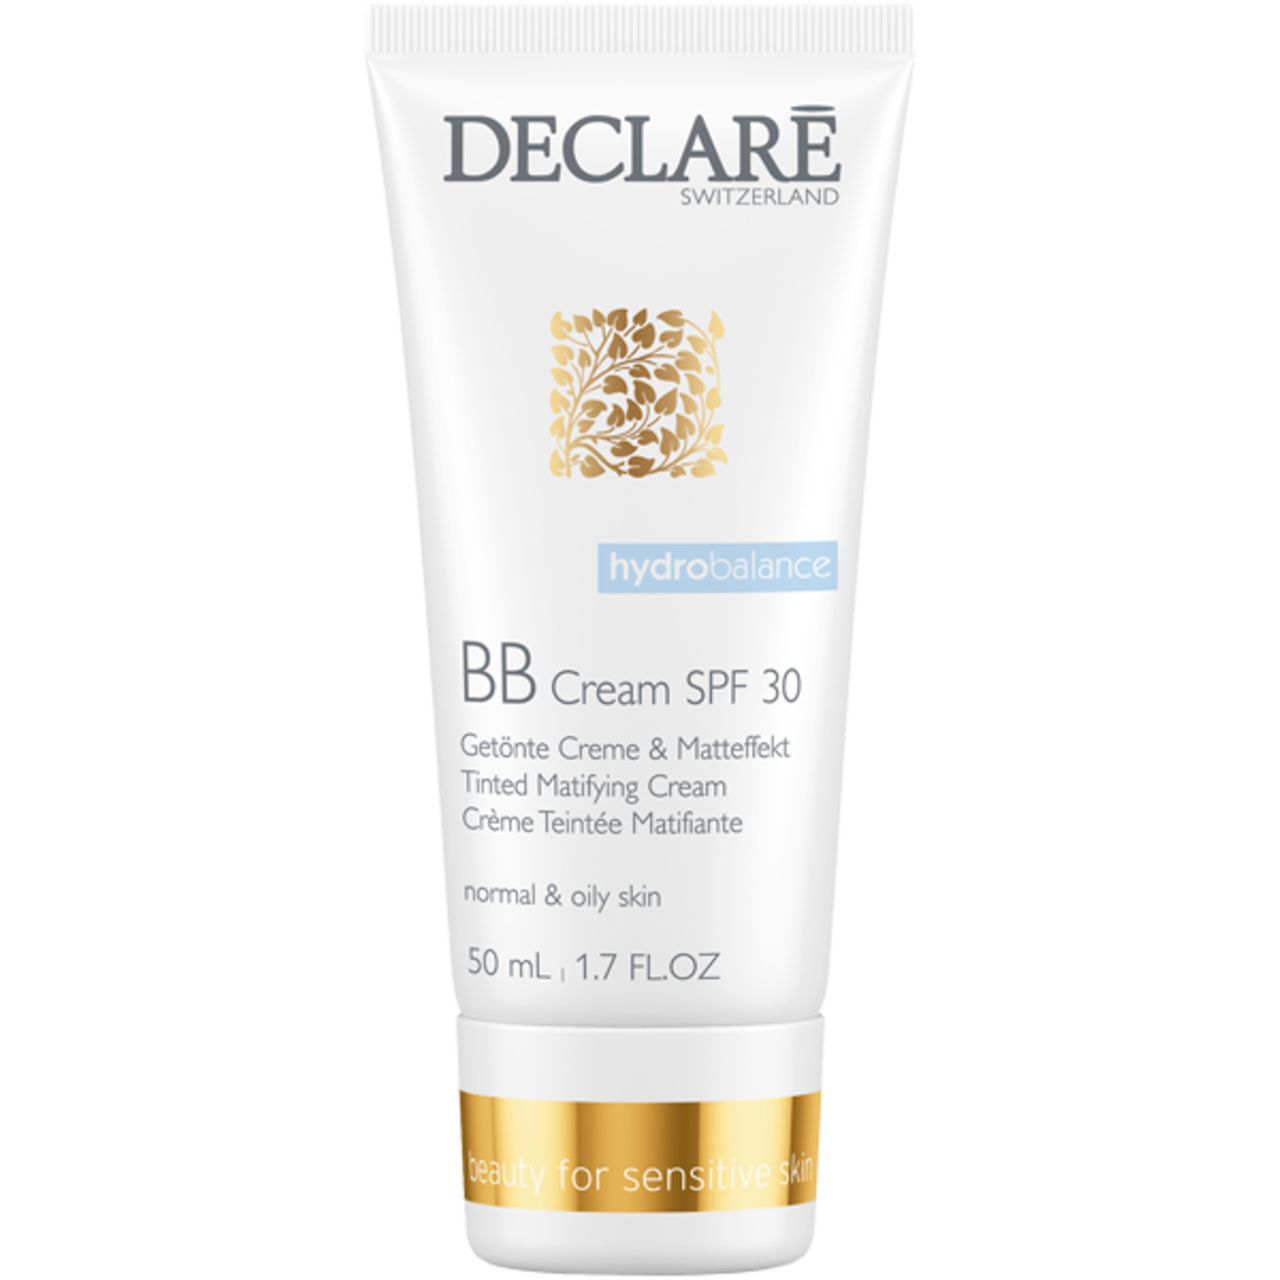 Declare BB Cream SPF 30